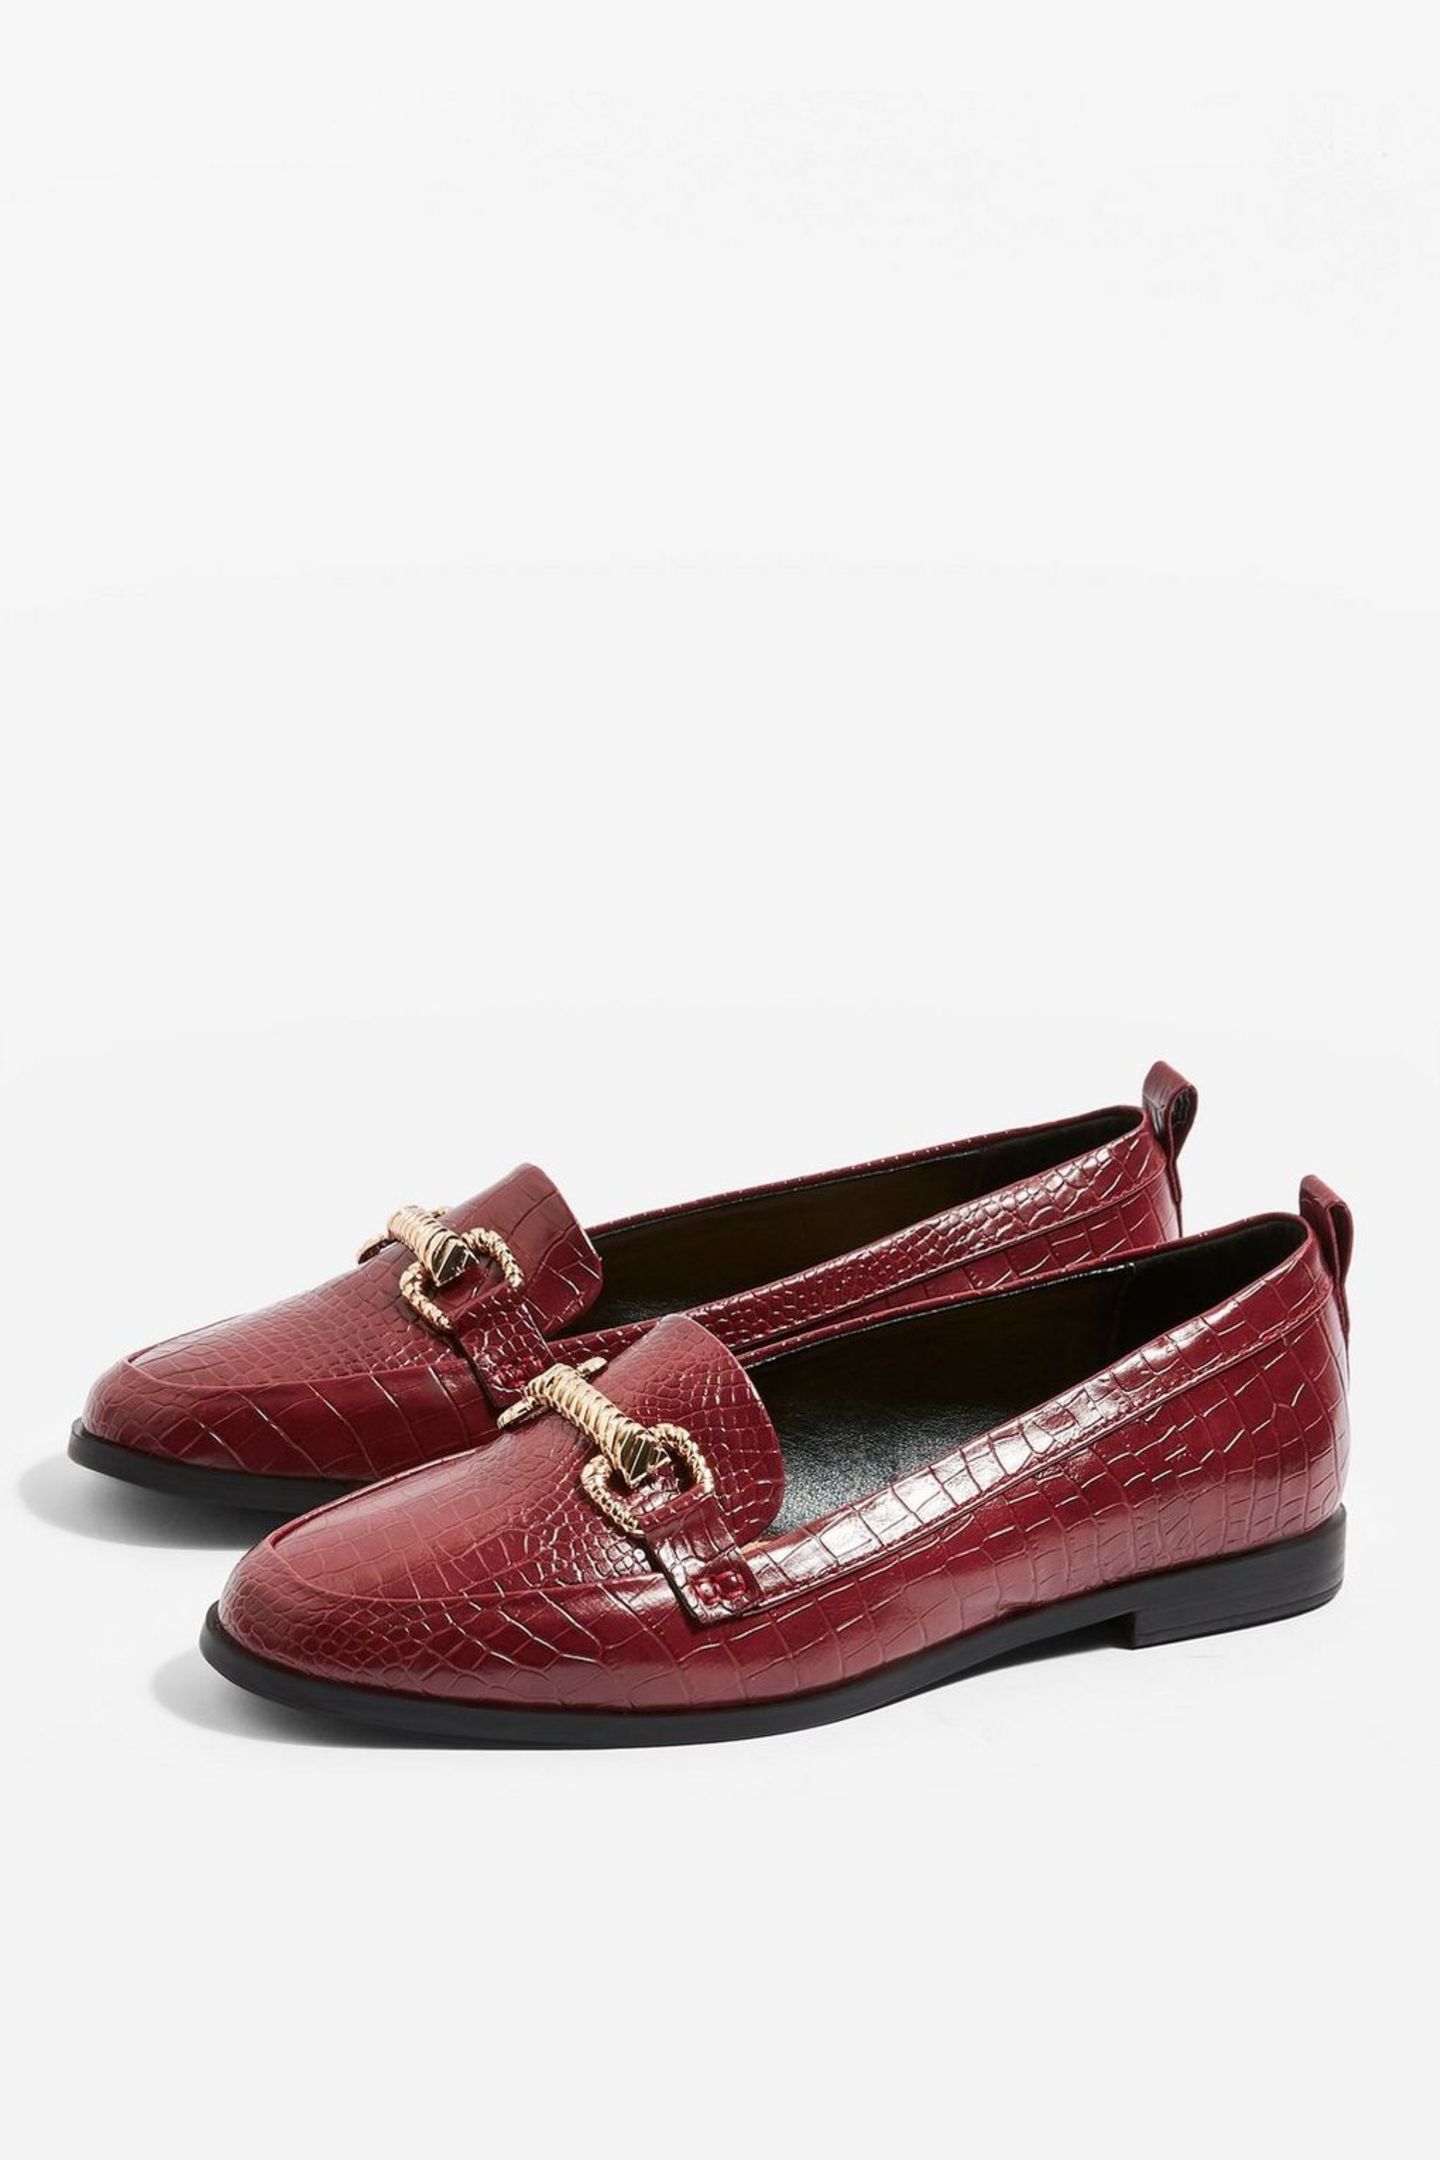 Festliche Schuhe ohne Absatz: Roter Loafer mit goldener Schnalle